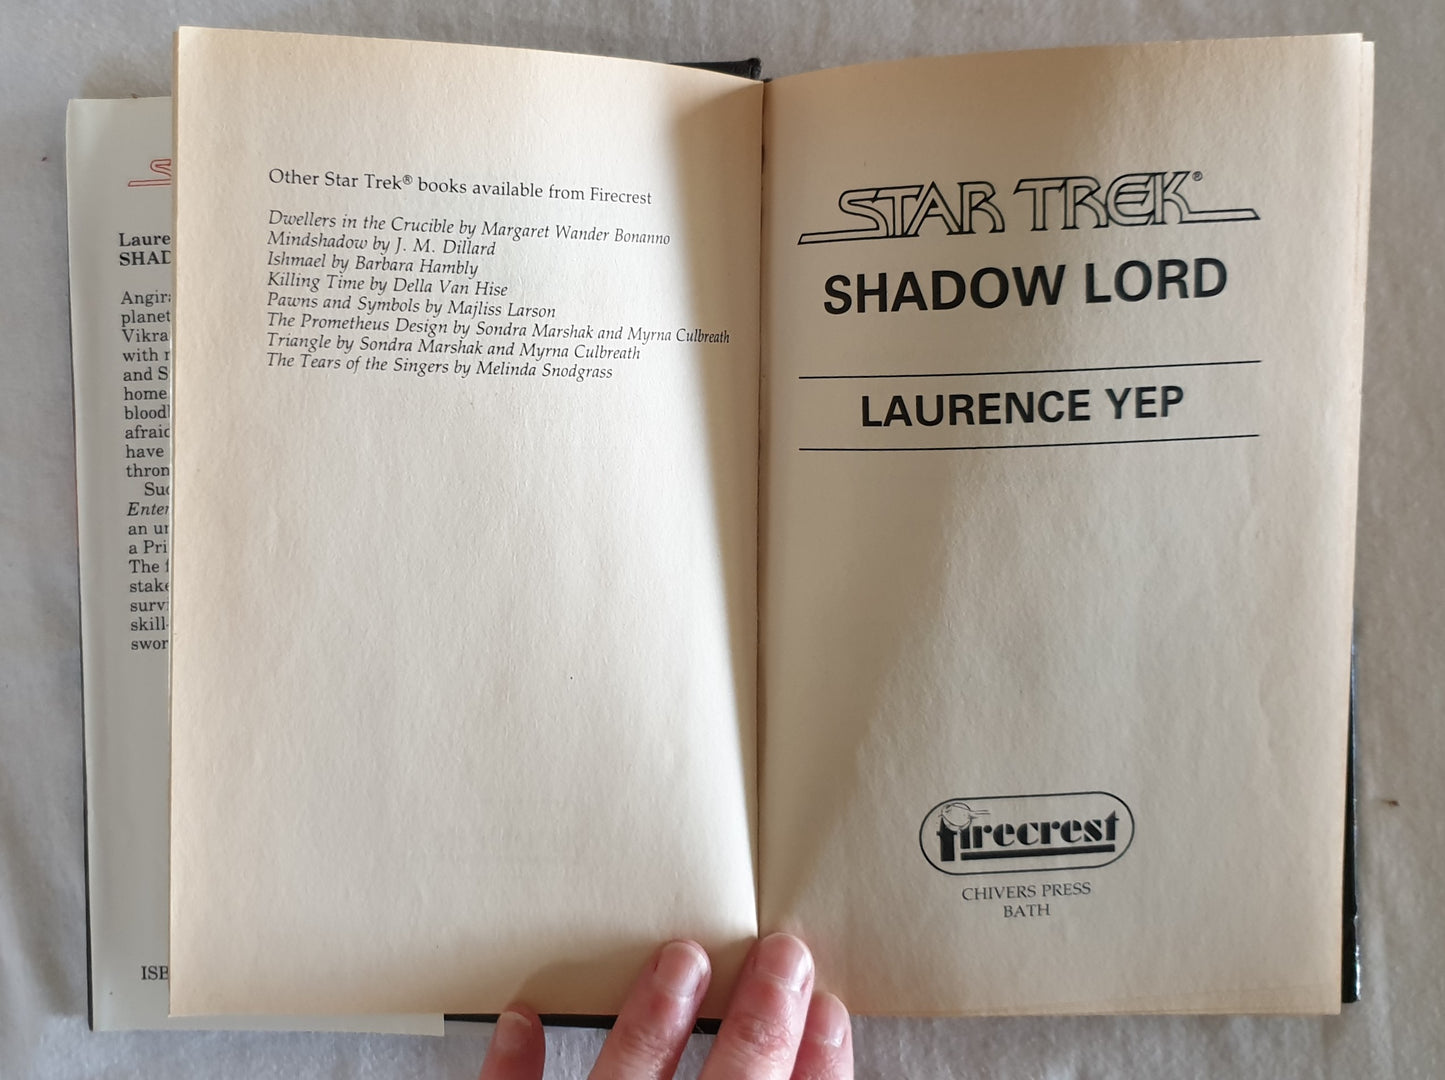 Star Trek Shadow Lord by Laurence Yep